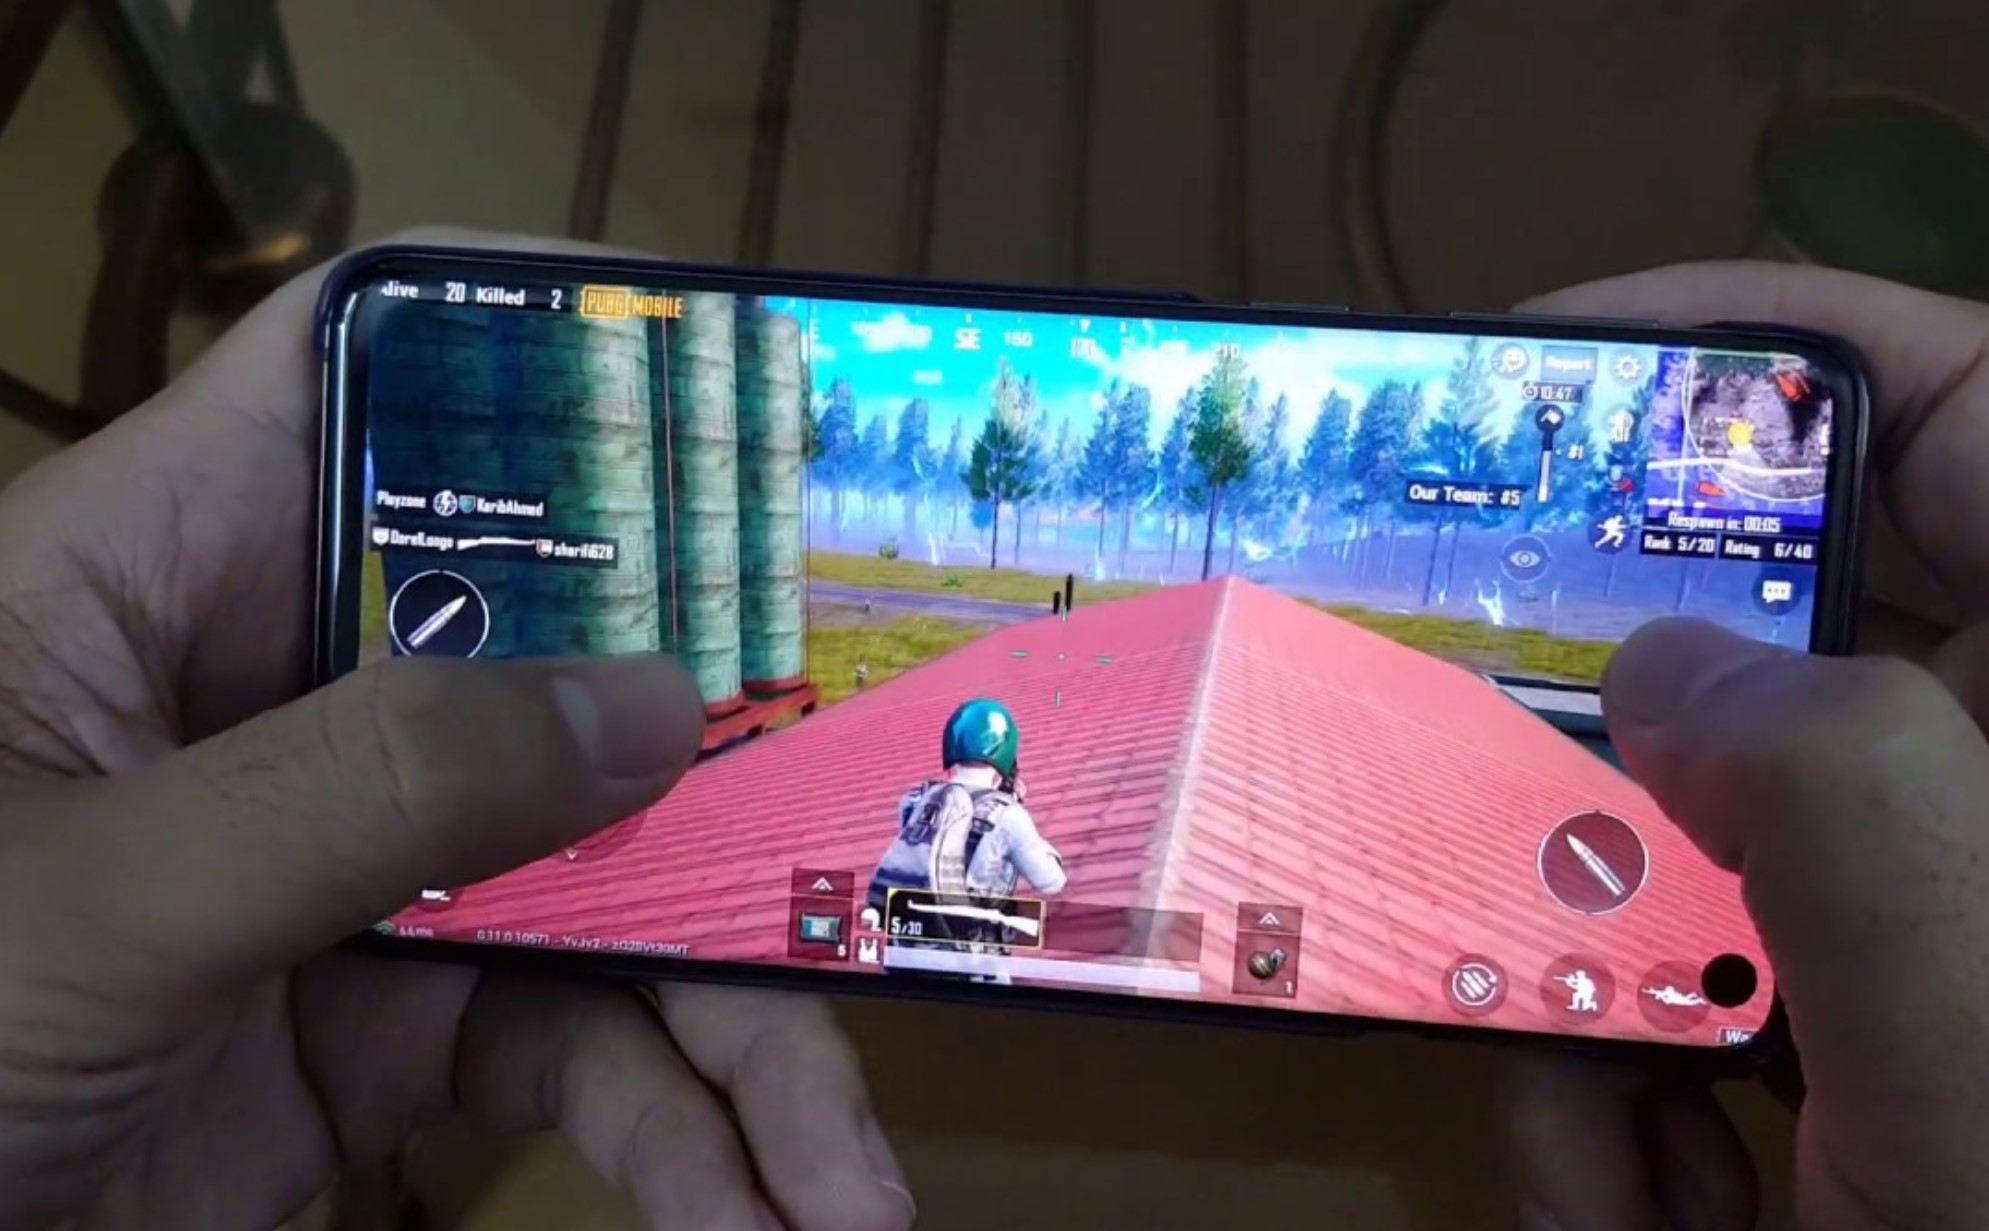 Free Fire, Mobile Legends Lewat, Rekomendasi HP Samsung Murah Kualitas Terbaik, Main Game Online Lancar